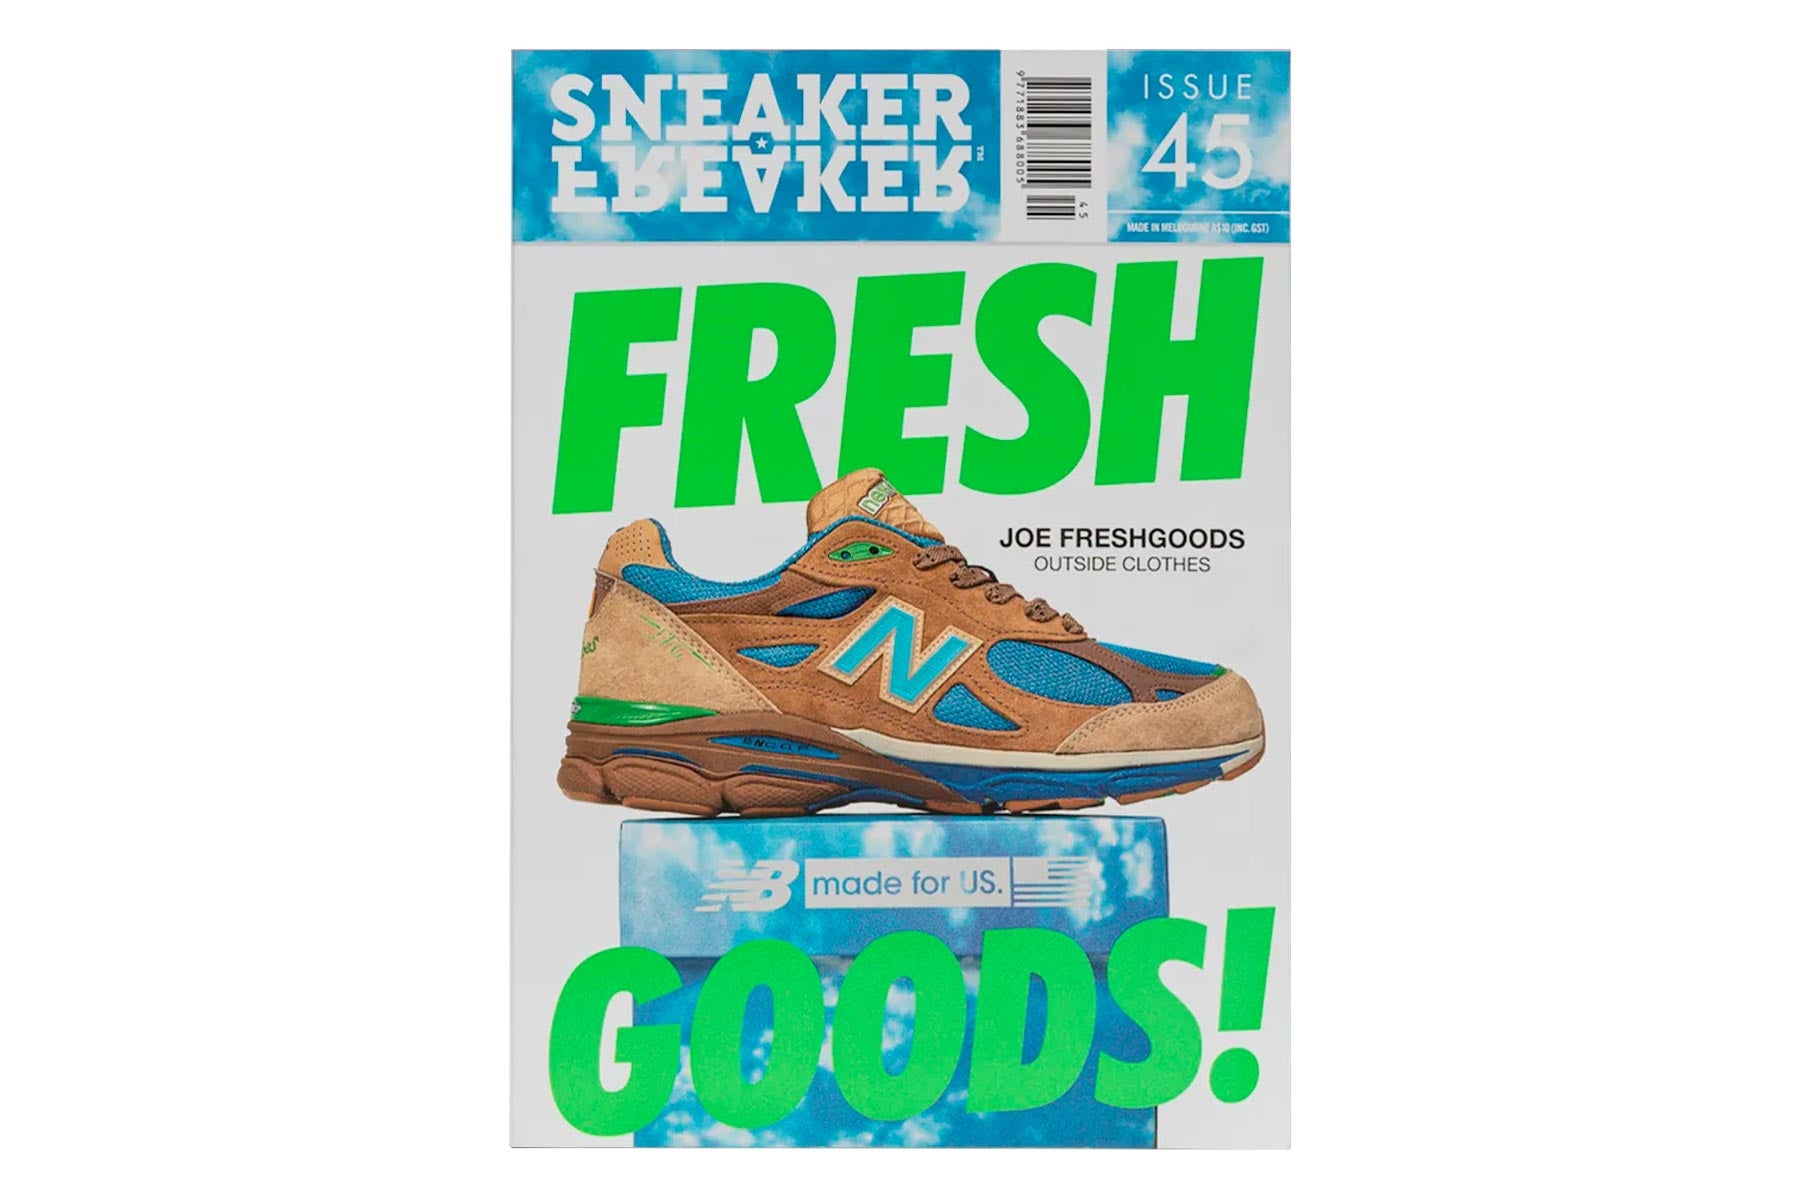 Sneaker Freaker Magazine - Issue 45